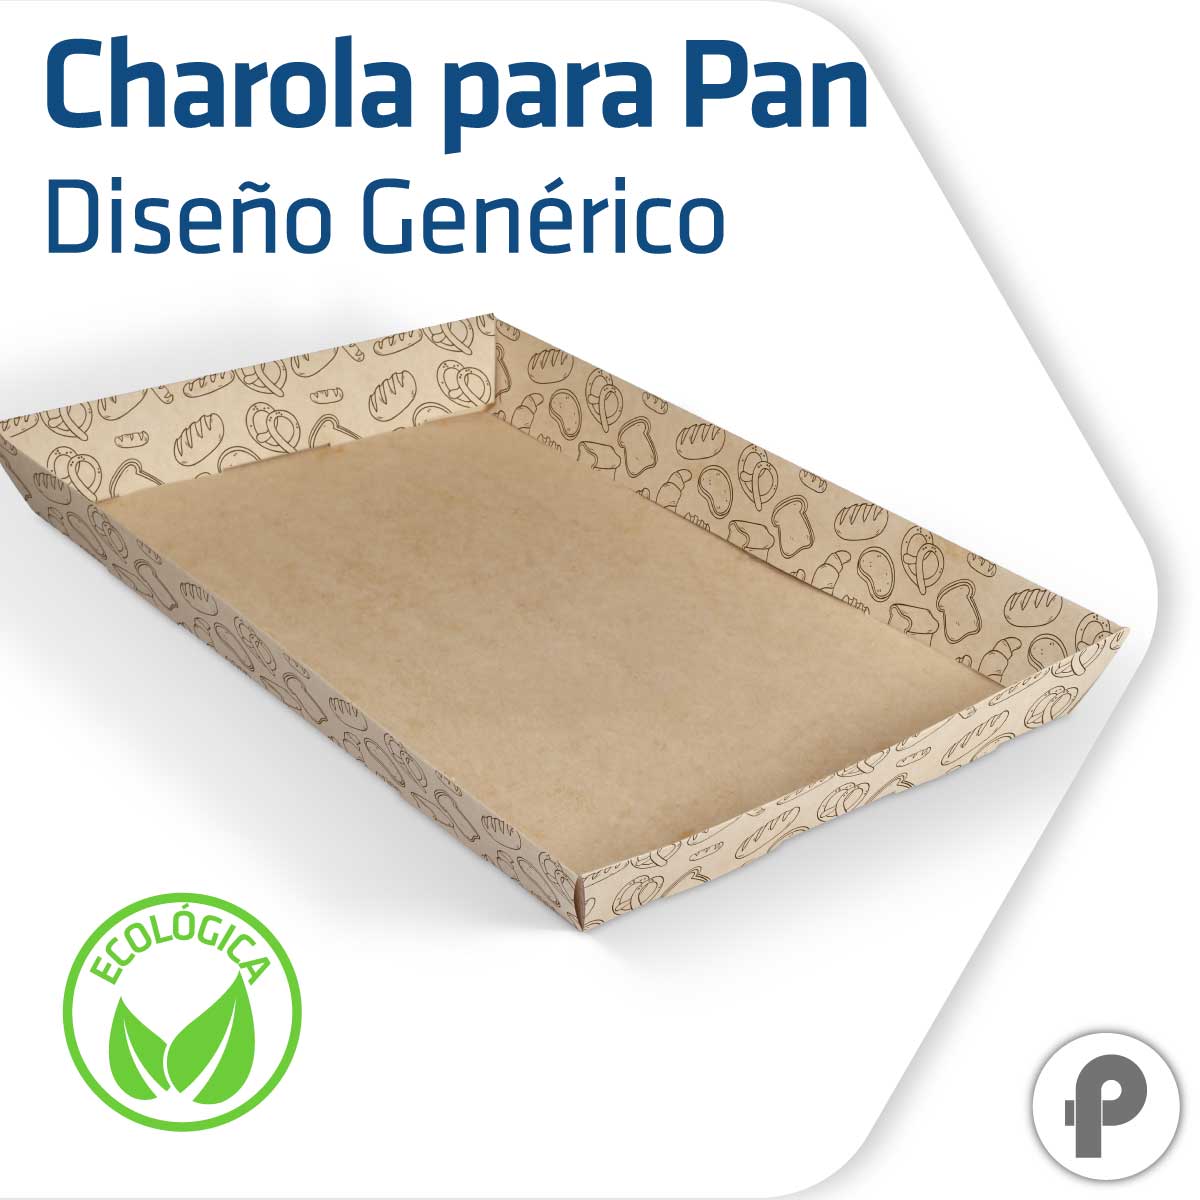 Charola para pan biodegradable y compostable diseño genérico